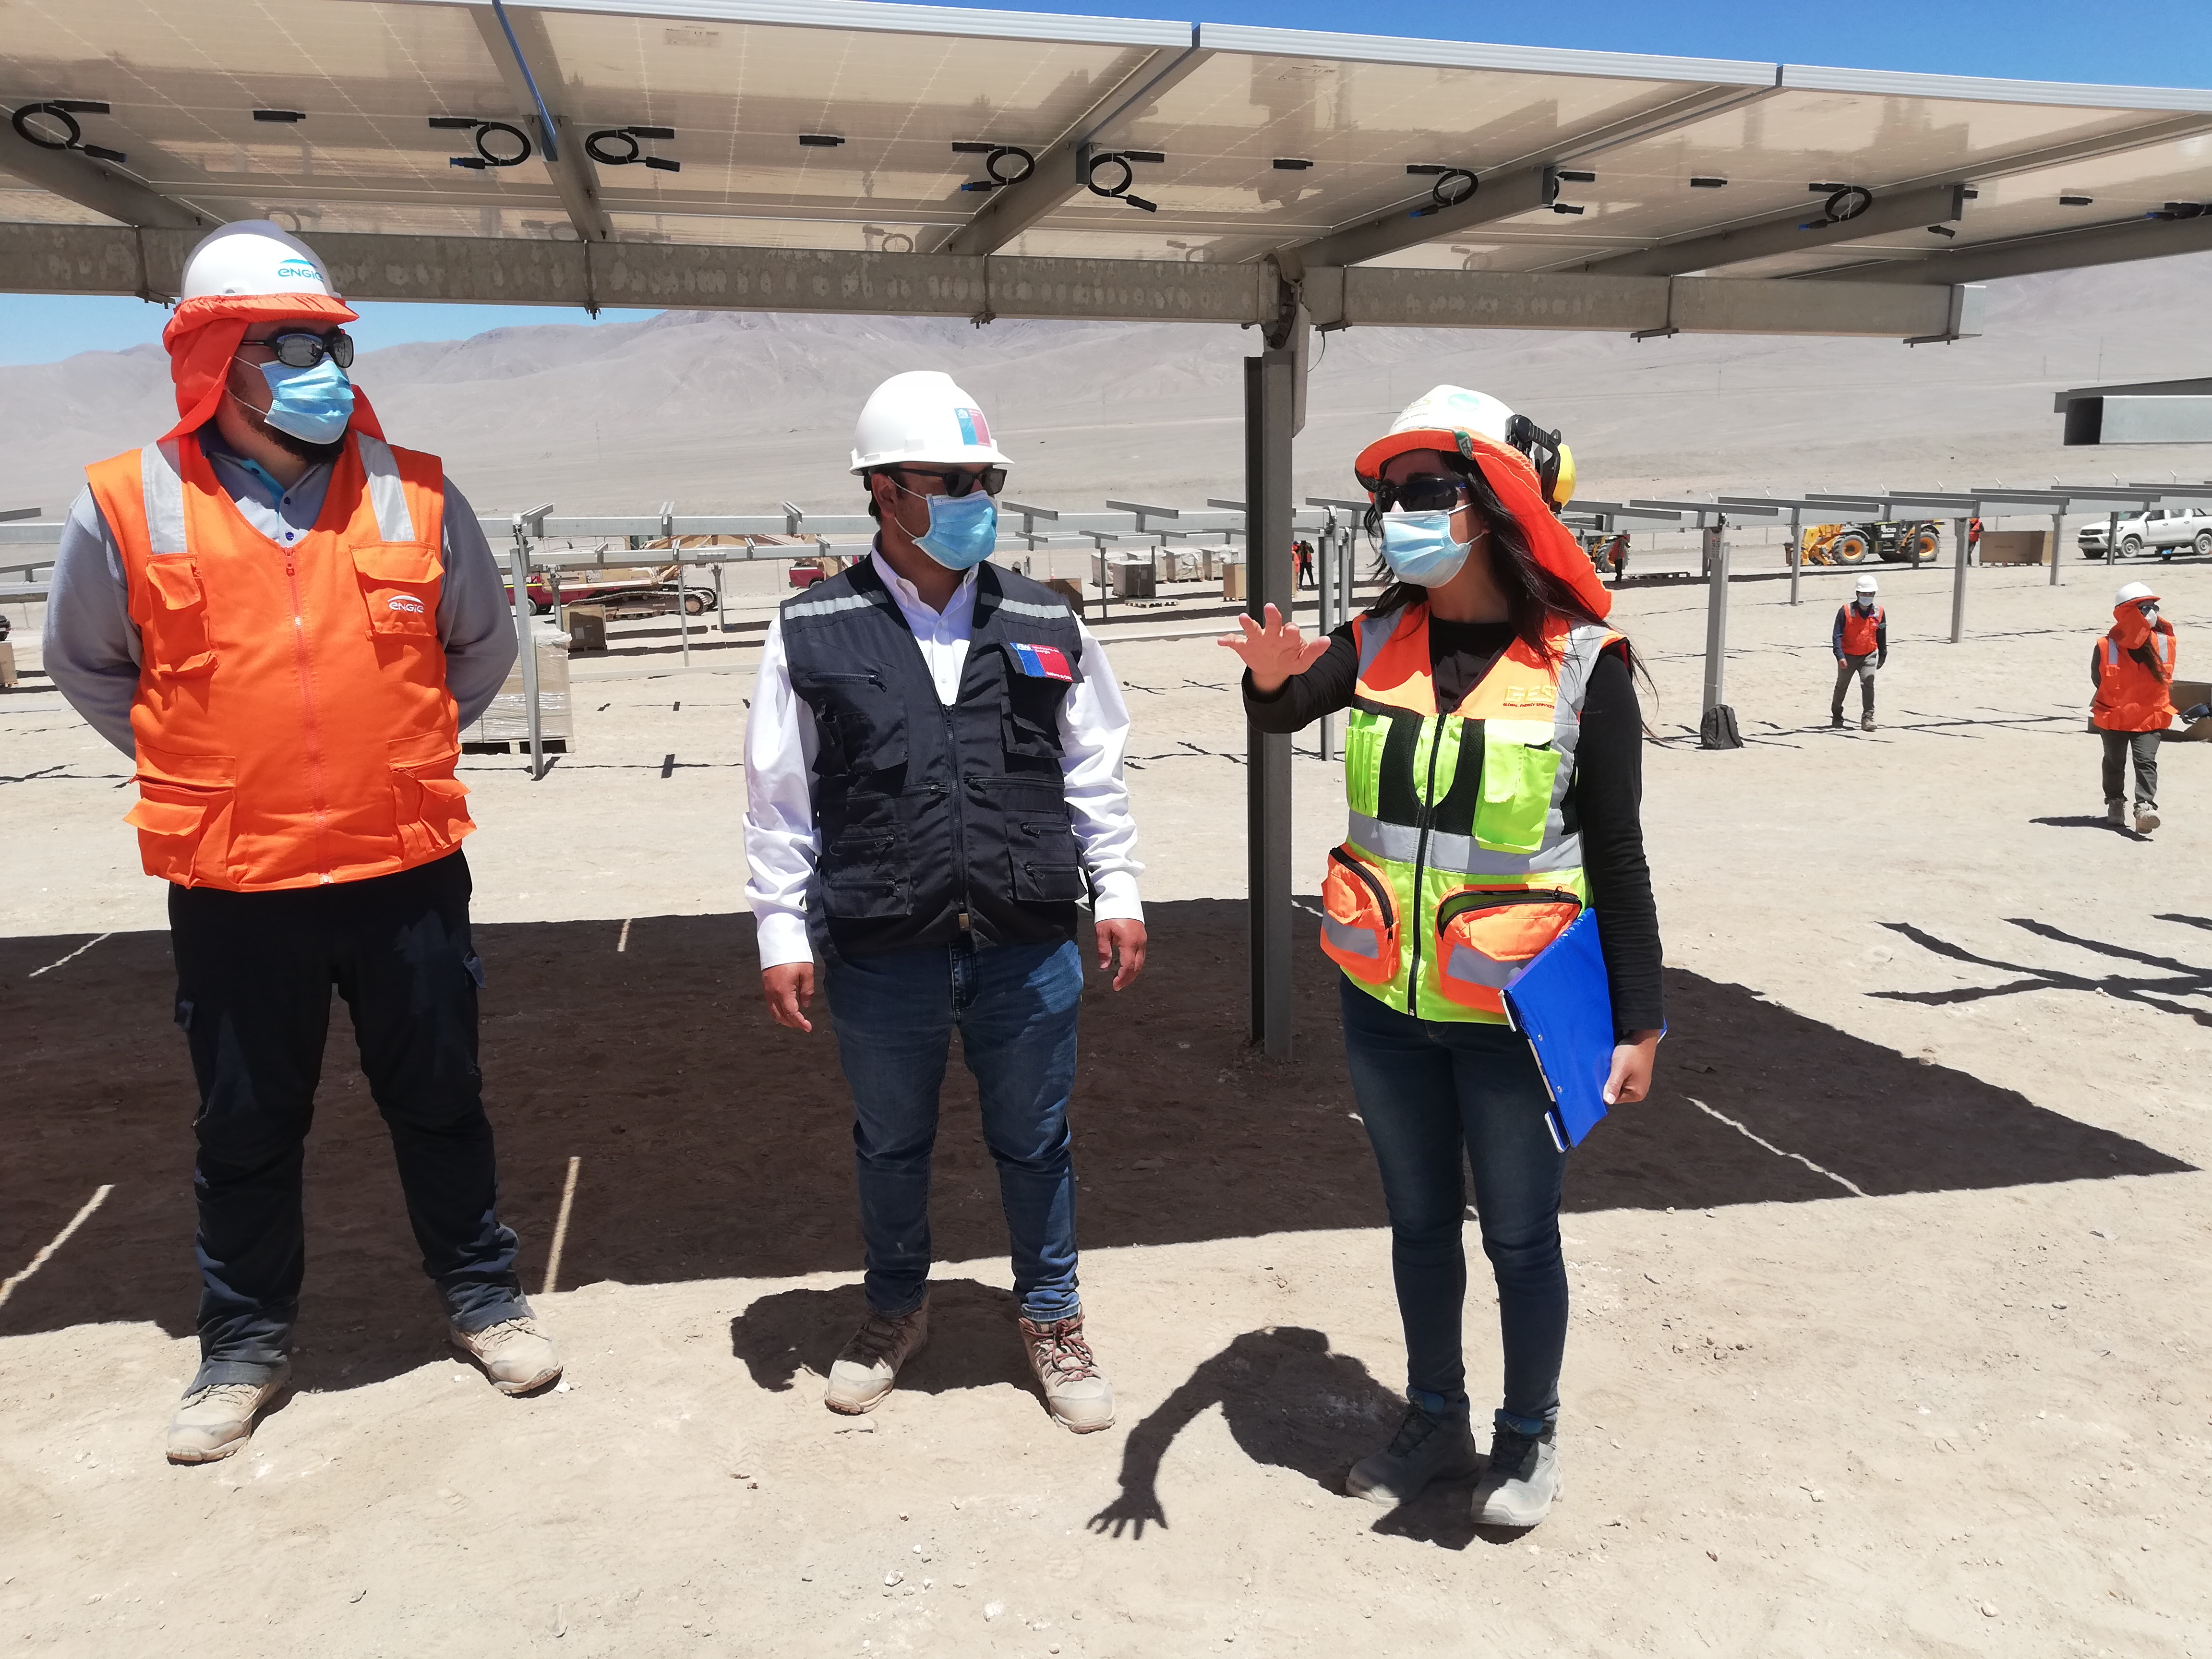 Seremi de Energía visitó el avance de construcción del proyecto fotovoltaico Capricornio 